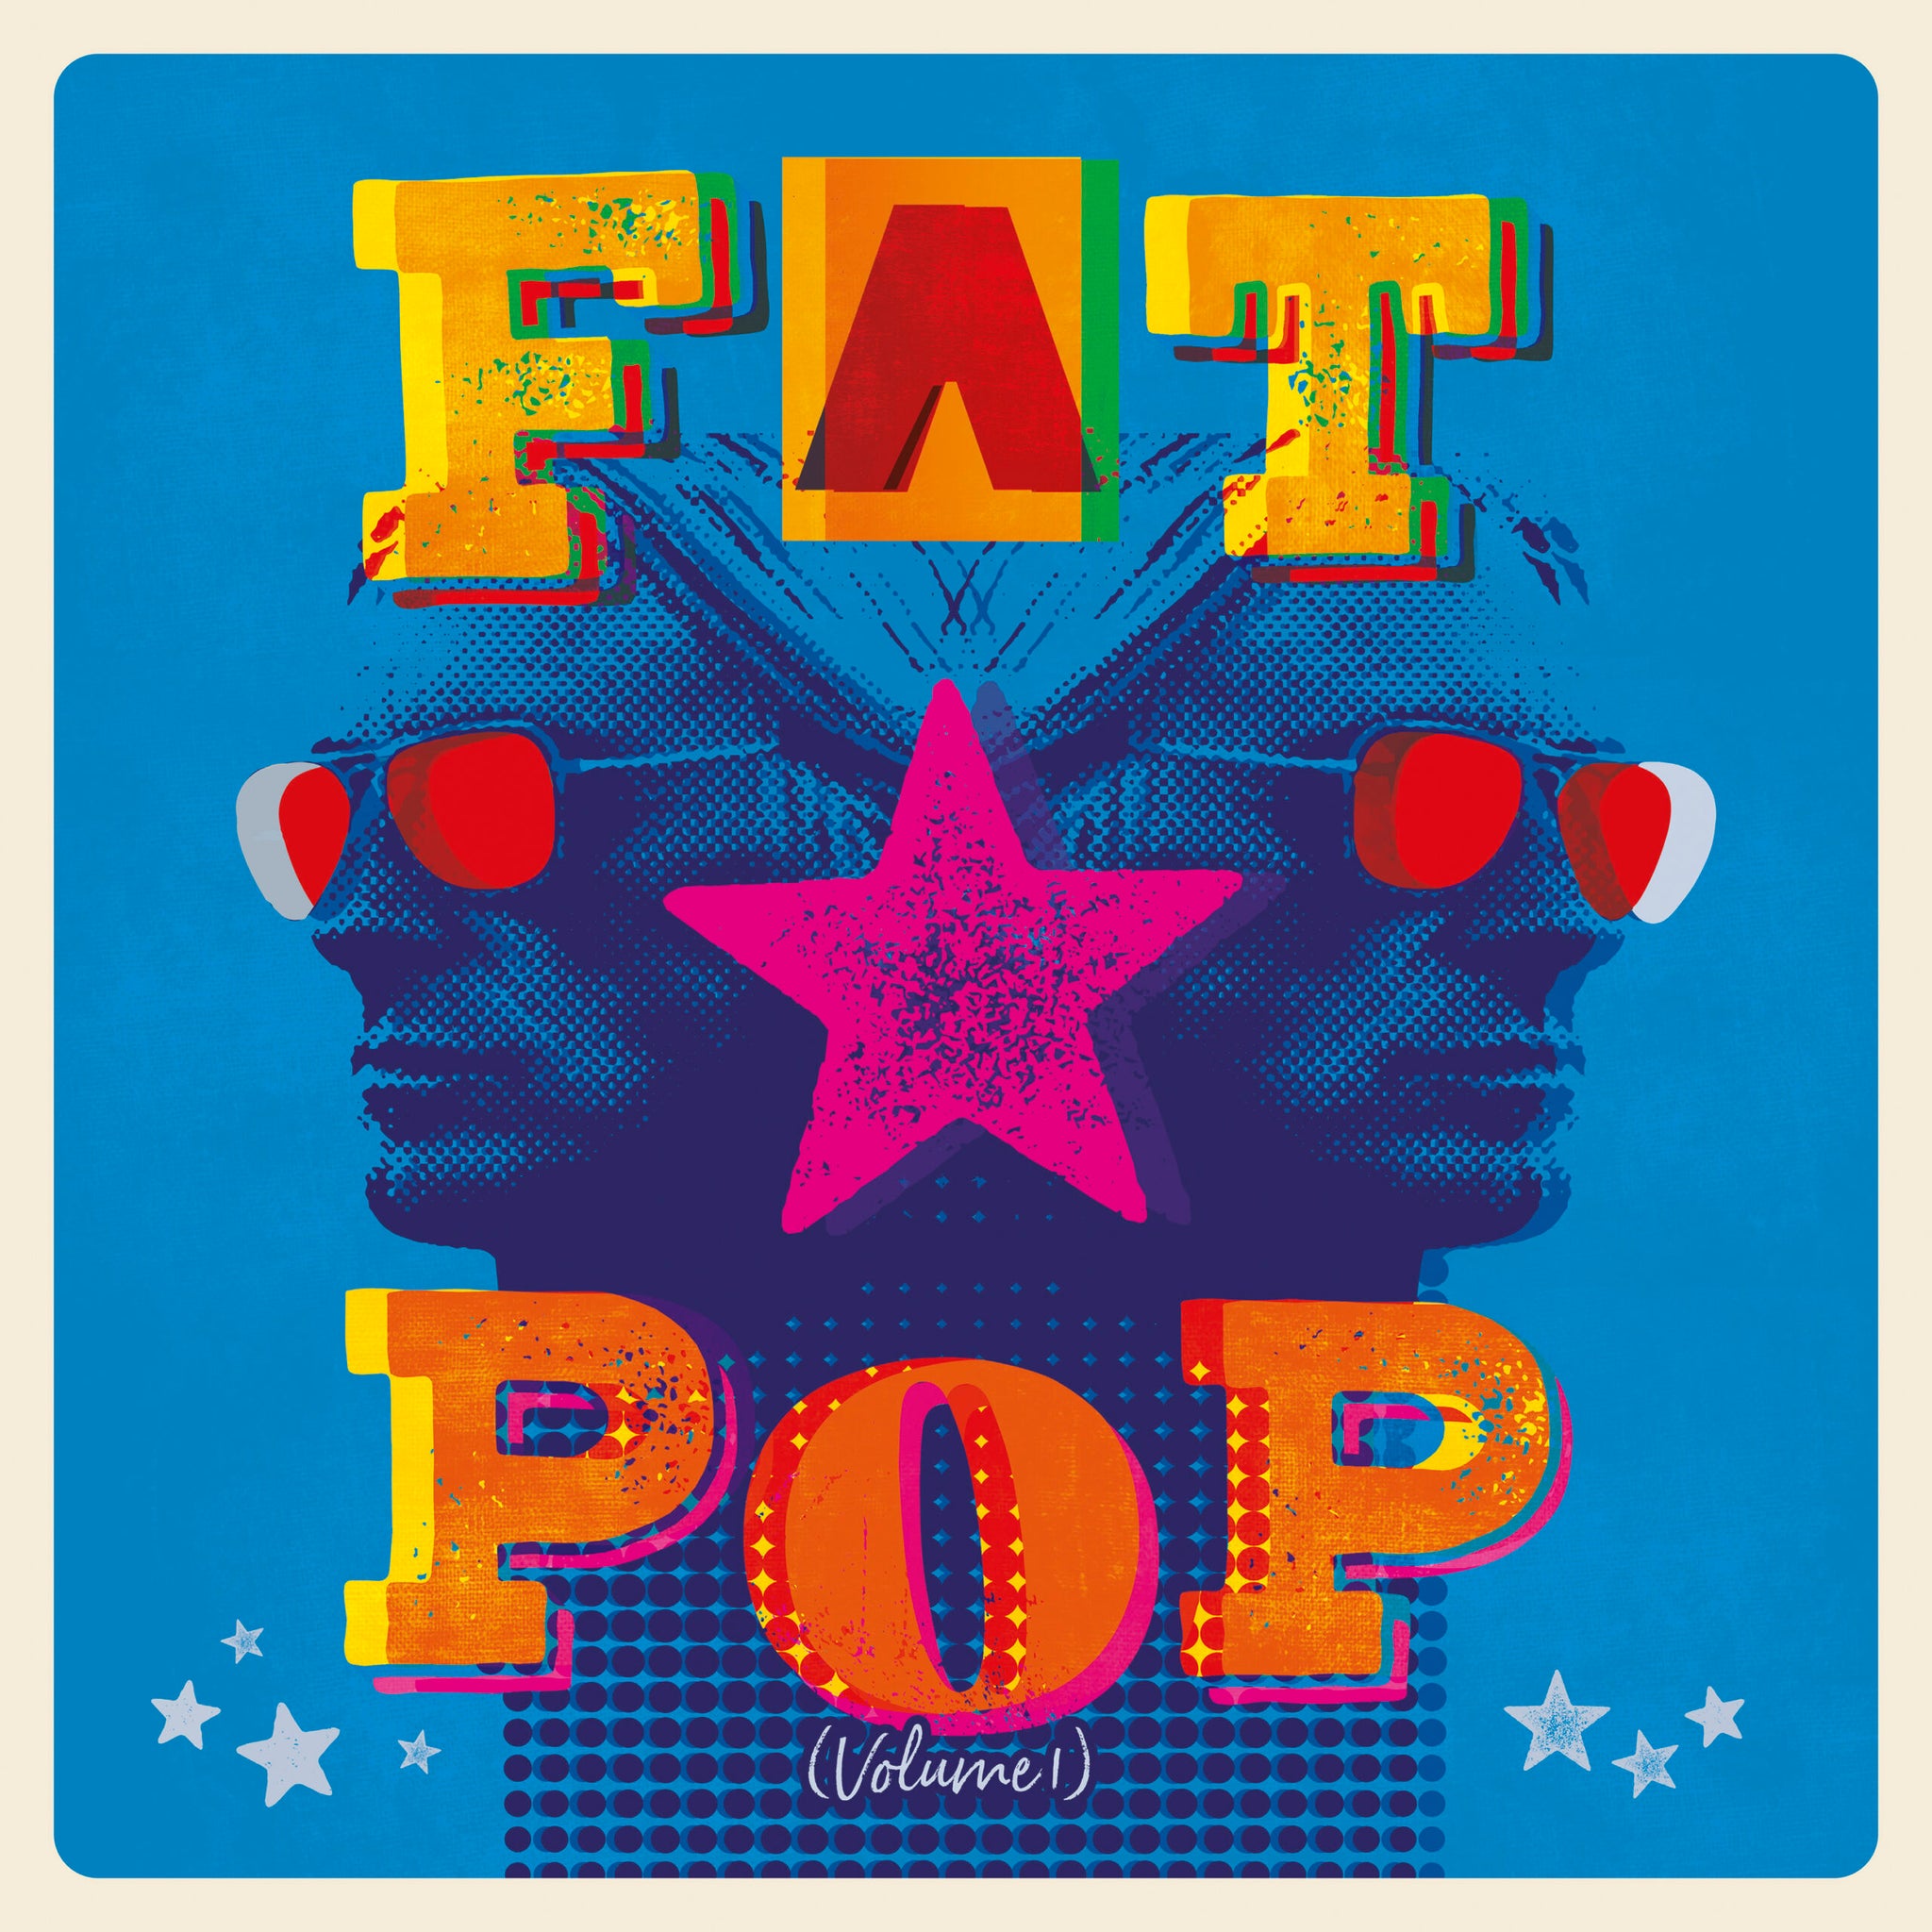 PAUL WELLER - Fat Pop (Volume 1) - CD